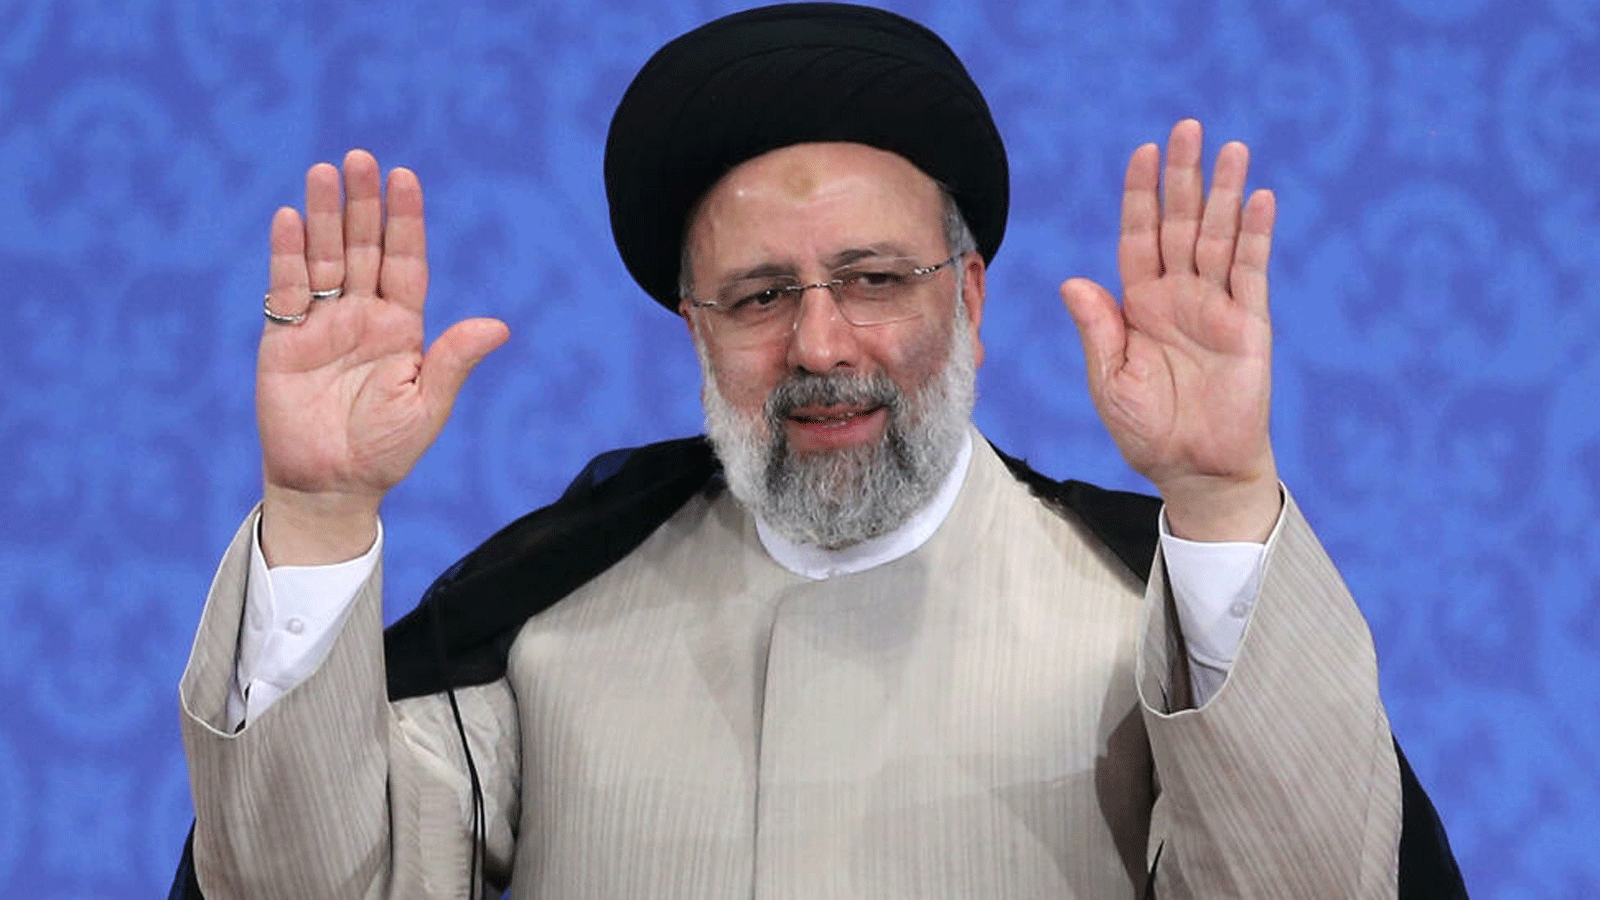 رئيسي شارك في إرسال إيرانيين إلى ممر الموت في عام 1988